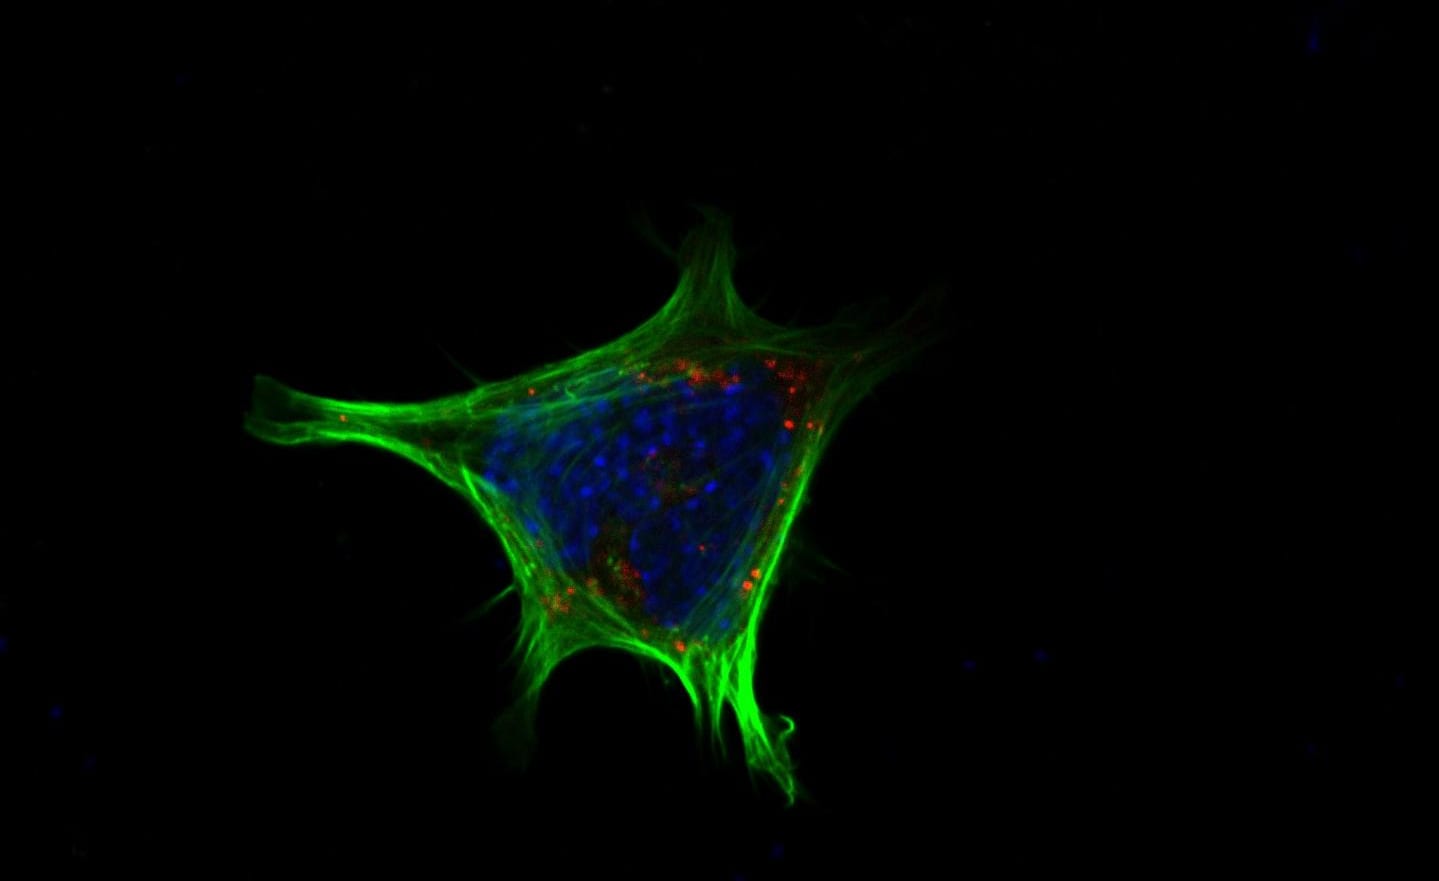 アクチン細胞骨格（緑）を染色したもの。この細胞で、TGR5が活性化すると細胞質にNPY（赤）が蓄積されて、その放出がブロックされる